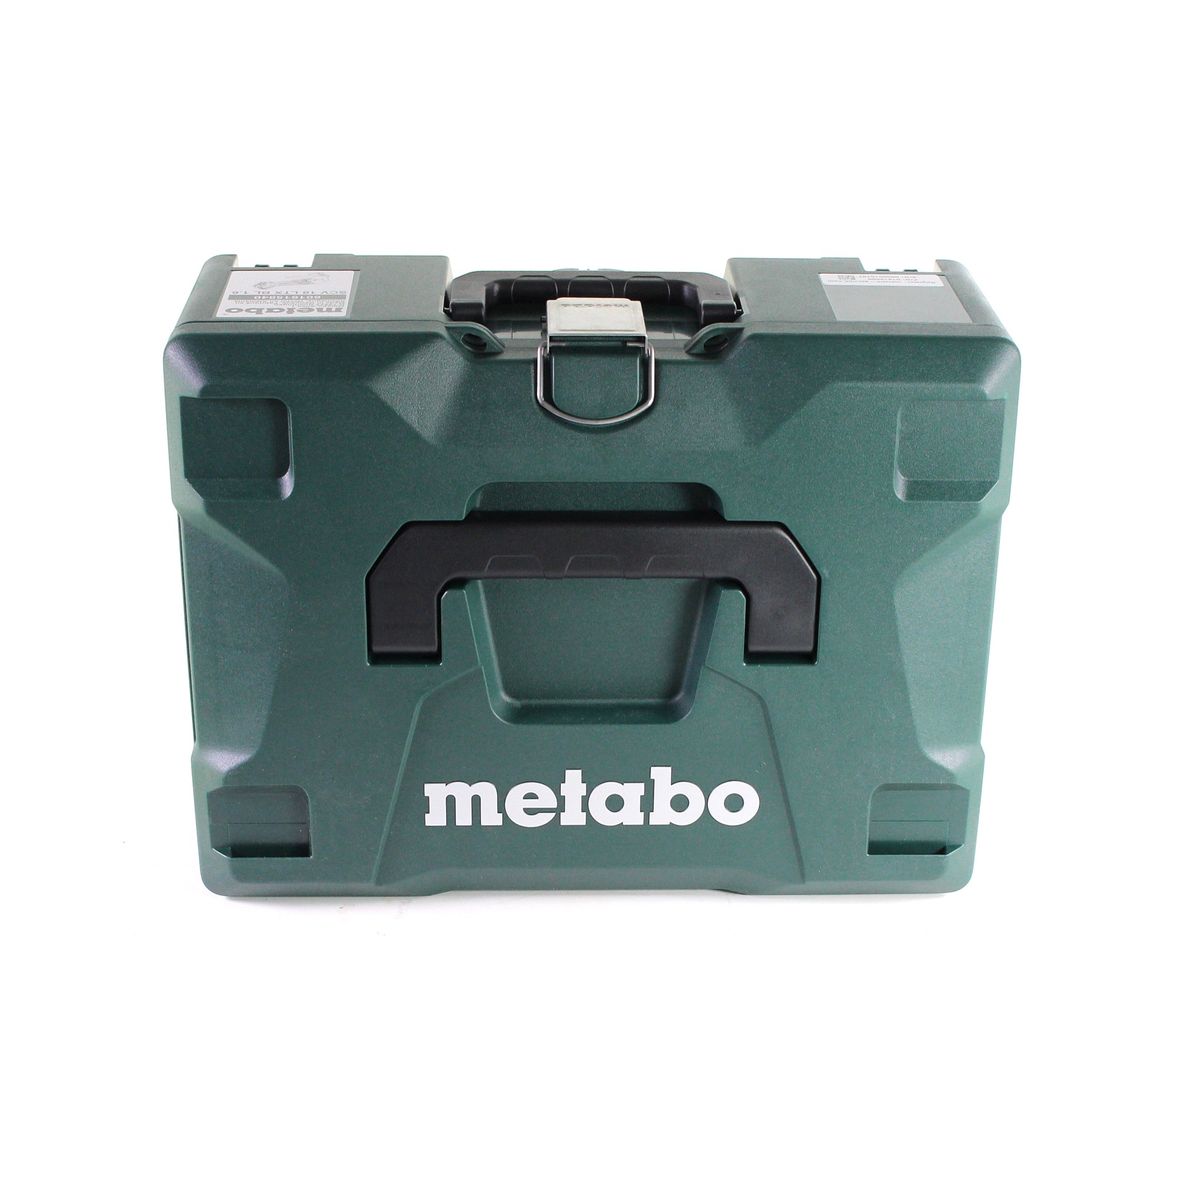 Metabo SCV 18 LTX BL 1.6 Cisaille à tôle sans fil 18 V Brushless + 1x Batterie LiHD 5,5 Ah + Chargeur + Coffret de transport MetaLoc - Full Service - GRATUIT - 3 ans de protection complète